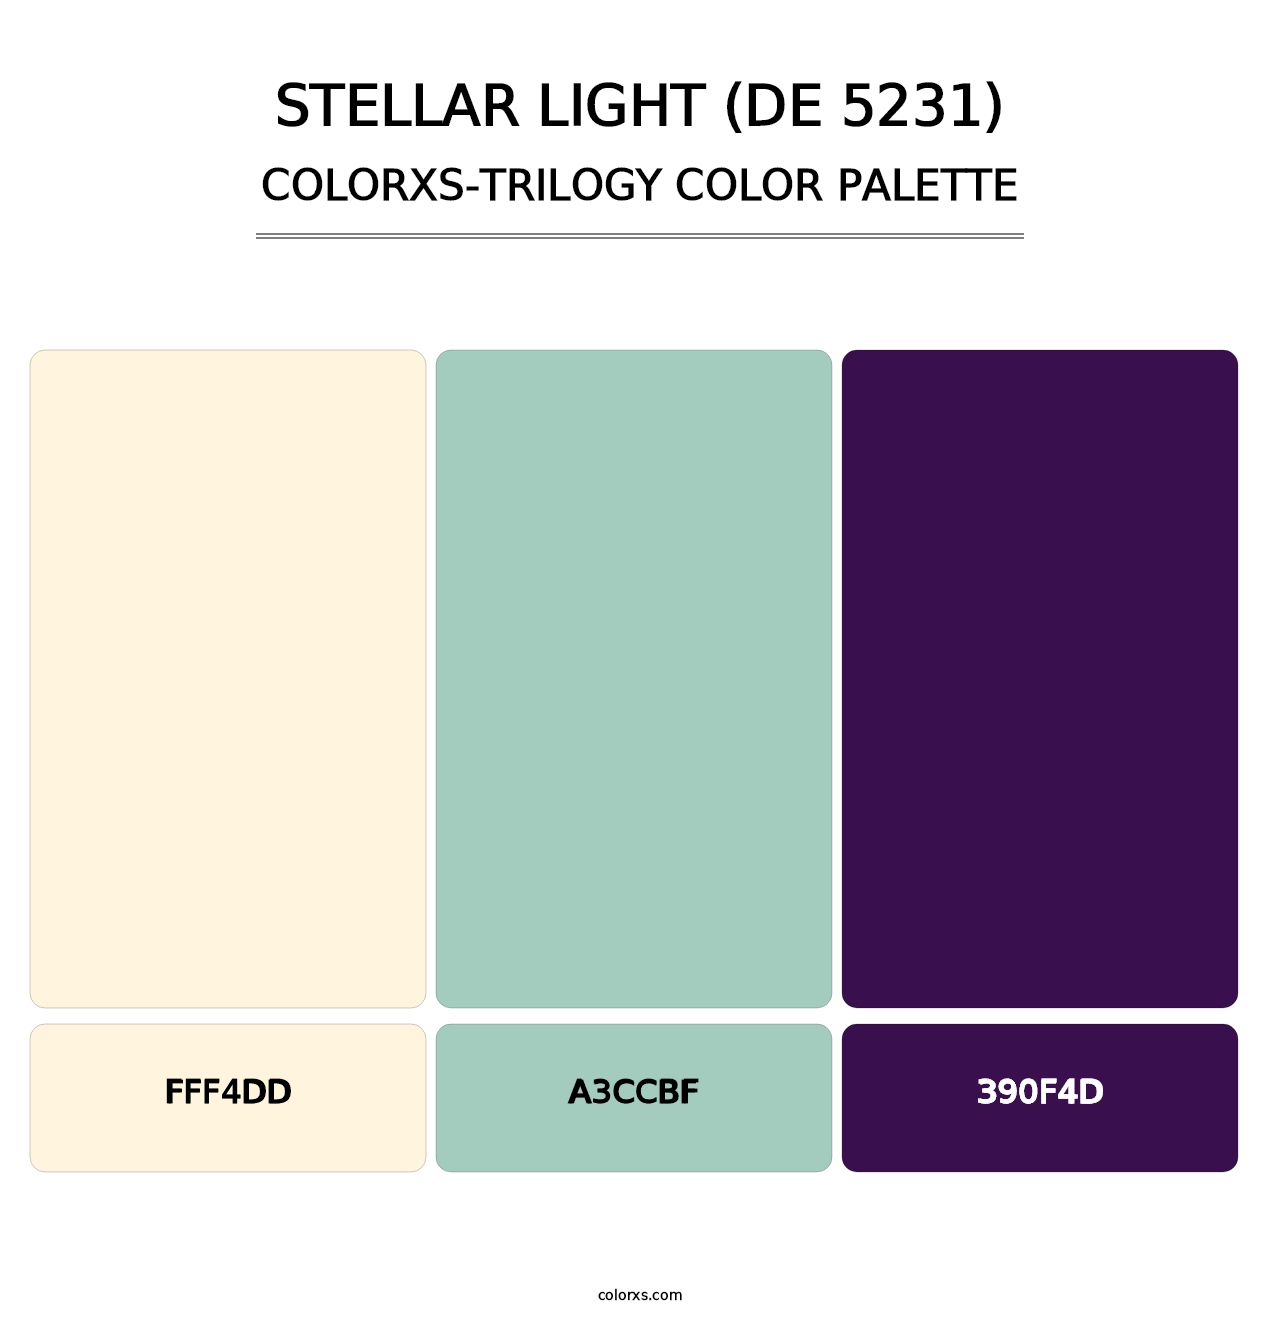 Stellar Light (DE 5231) - Colorxs Trilogy Palette